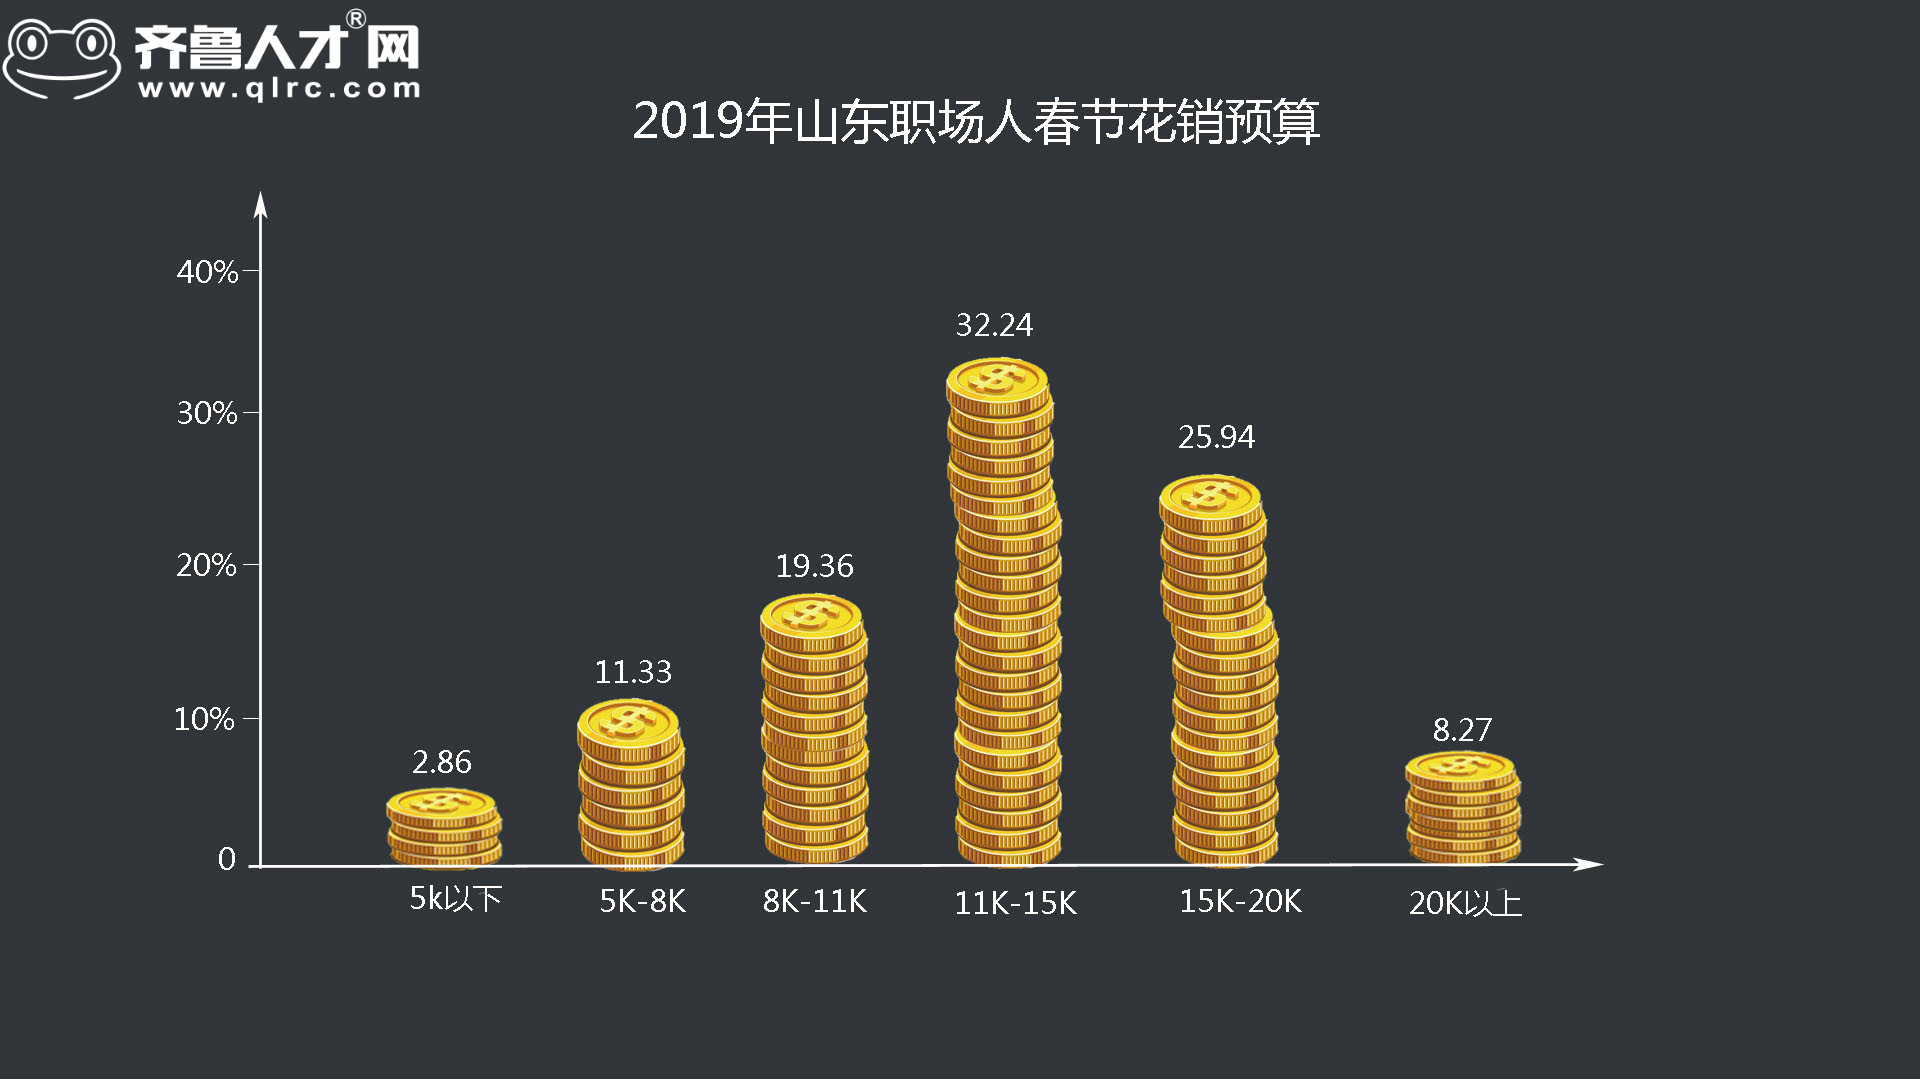 齊魯人才網-2019年山東四季度薪酬數據圖1.jpg